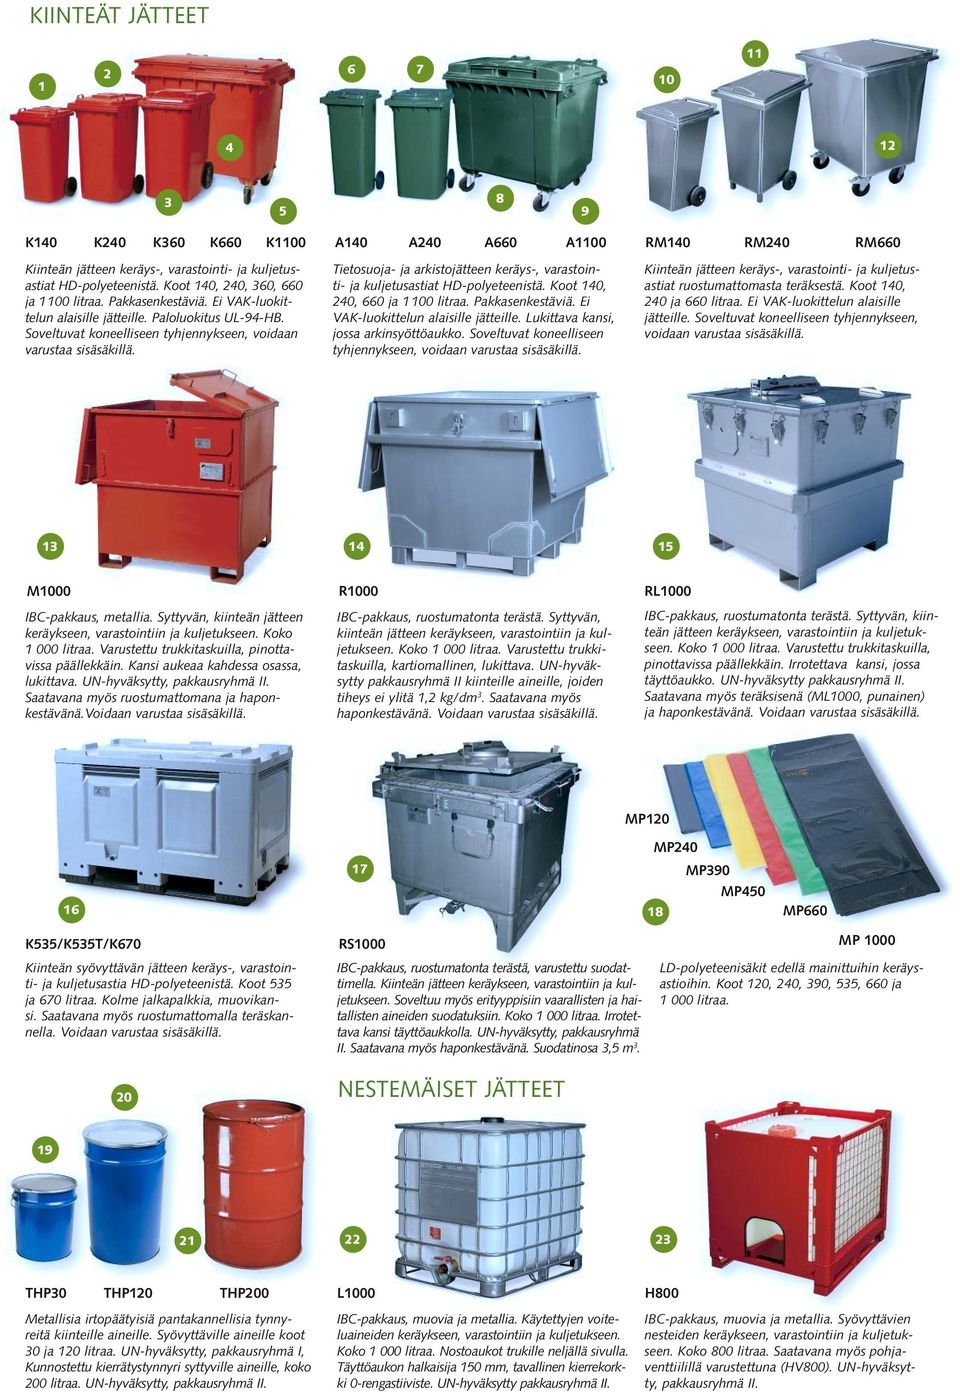 Tietosuoja- ja arkistojätteen keräys-, varastointi- ja kuljetusastiat HD-polyeteenistä. Koot 140, 240, 660 ja 1 100 litraa. Pakkasenkestäviä. Ei VAK-luokittelun alaisille jätteille.